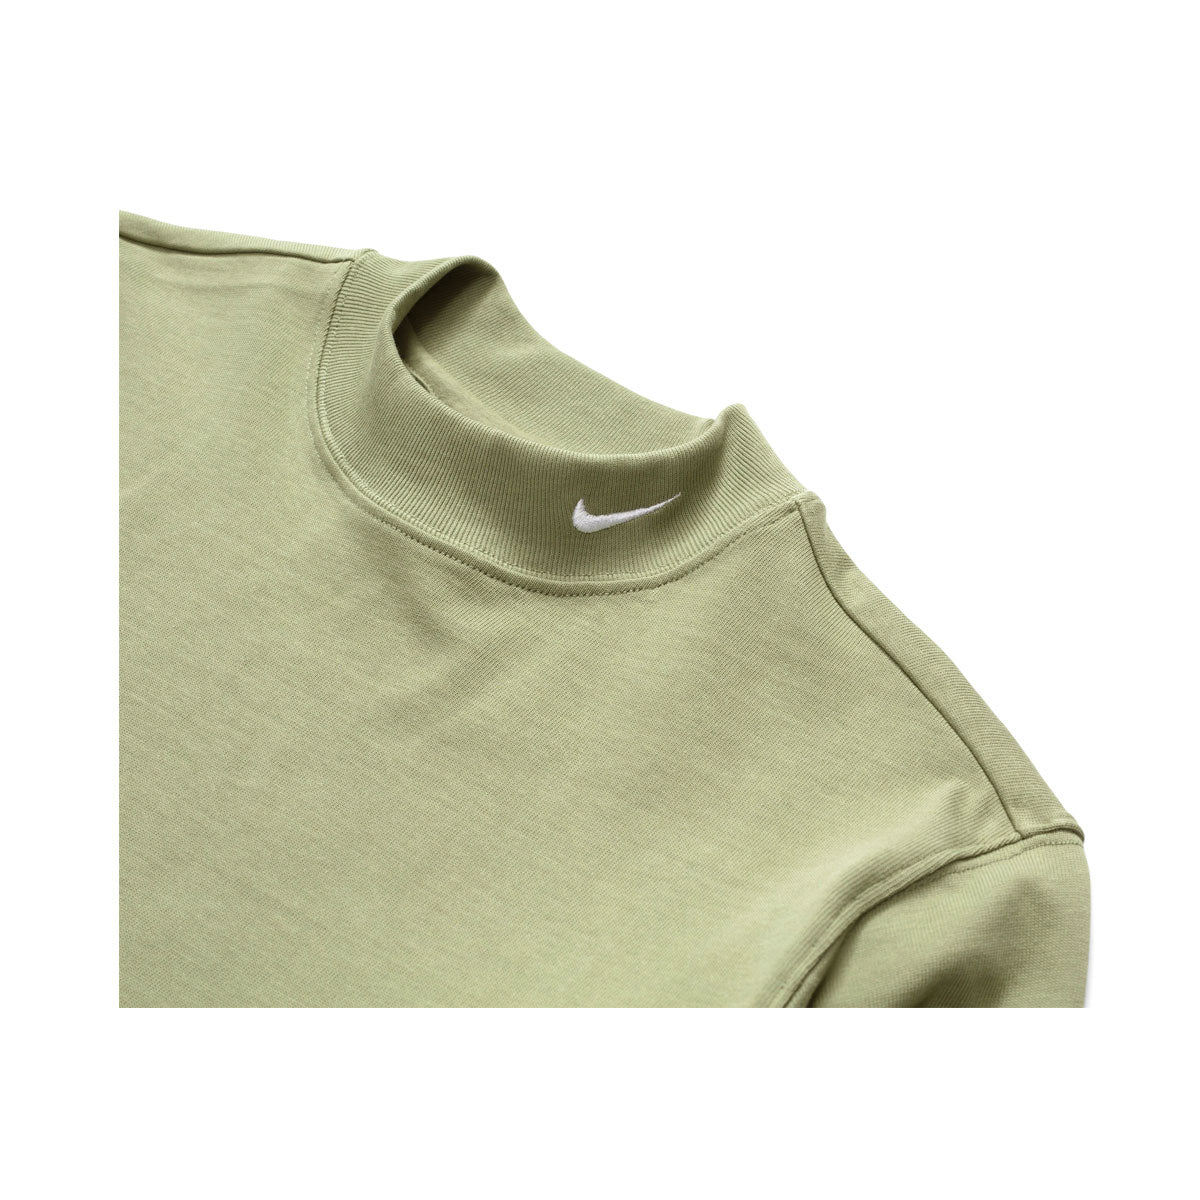 Nike Men's Sportswear Long-Sleeve Mock-Neck Shirt